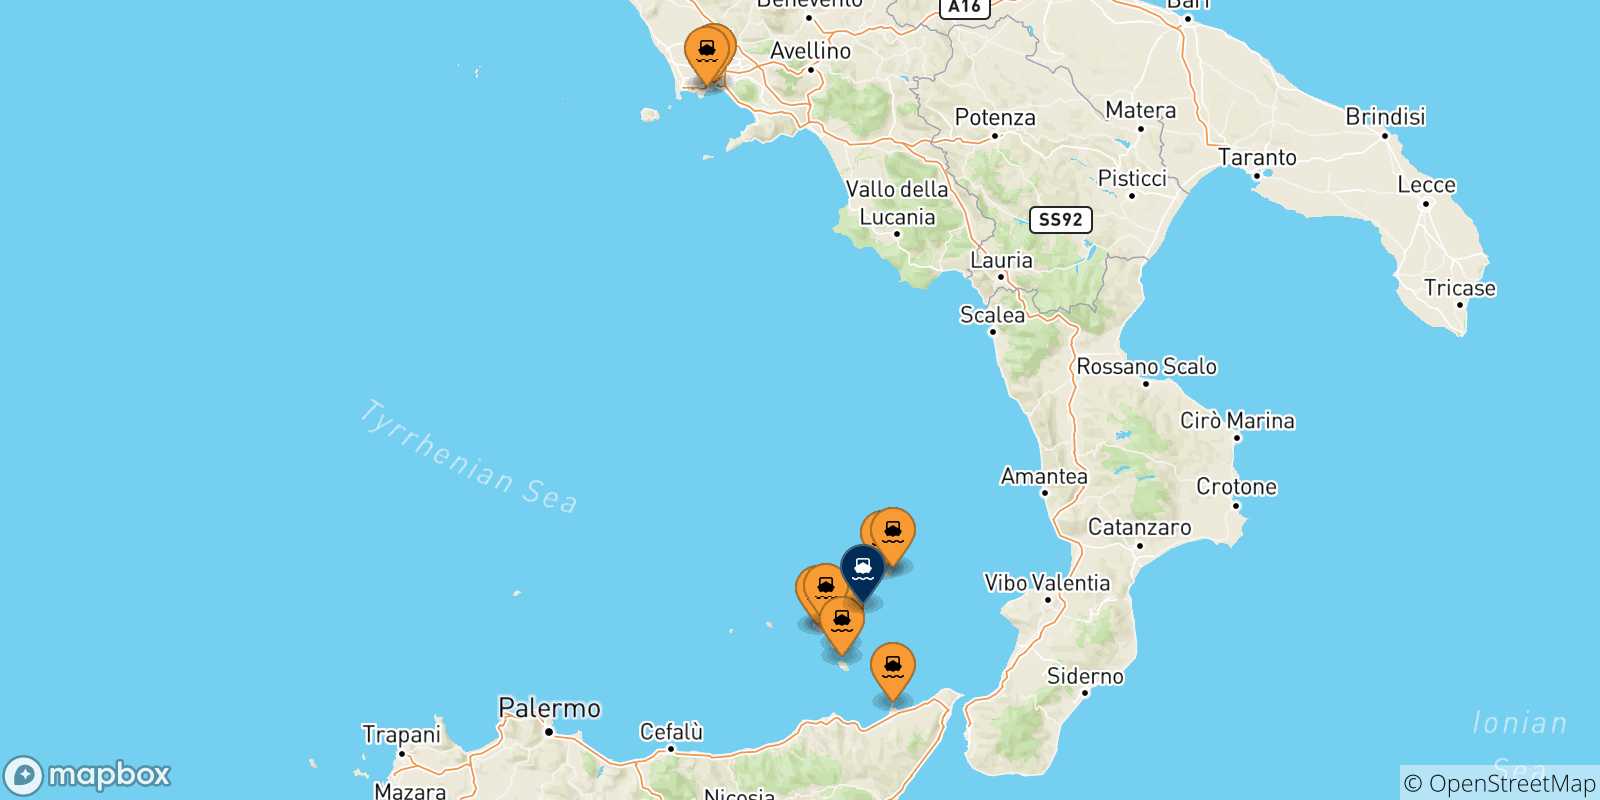 Mappa delle possibili rotte tra l'Italia e Panarea